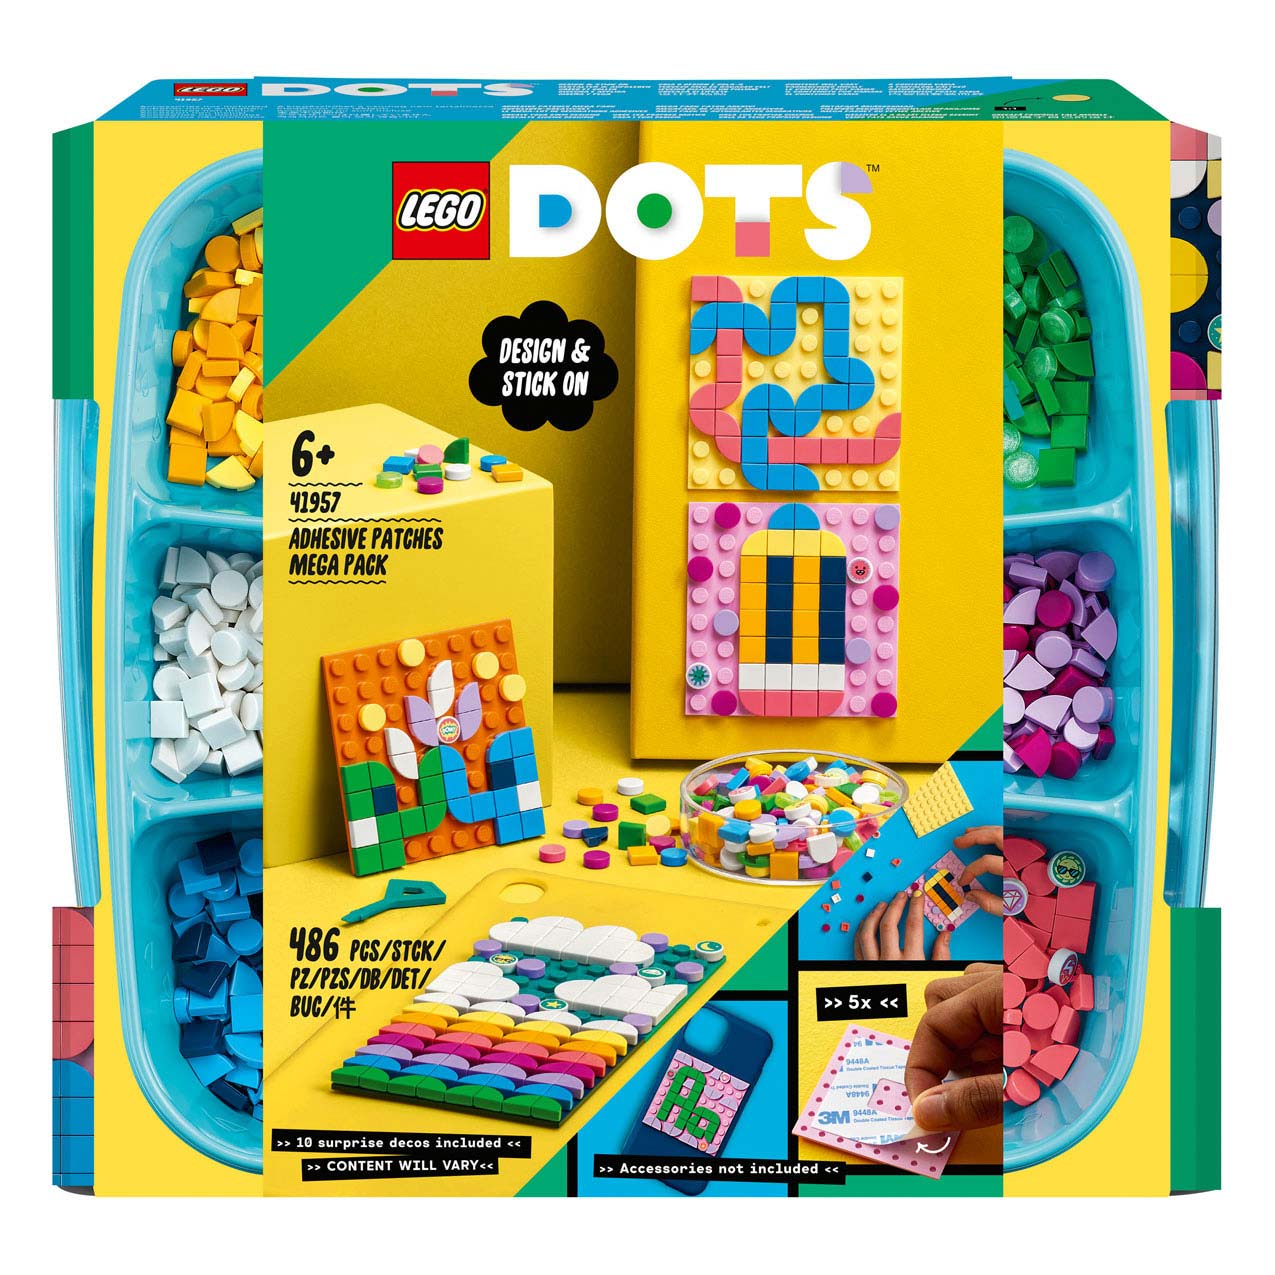 LEGO DOTS Zelfklevende patches megaset - 41957